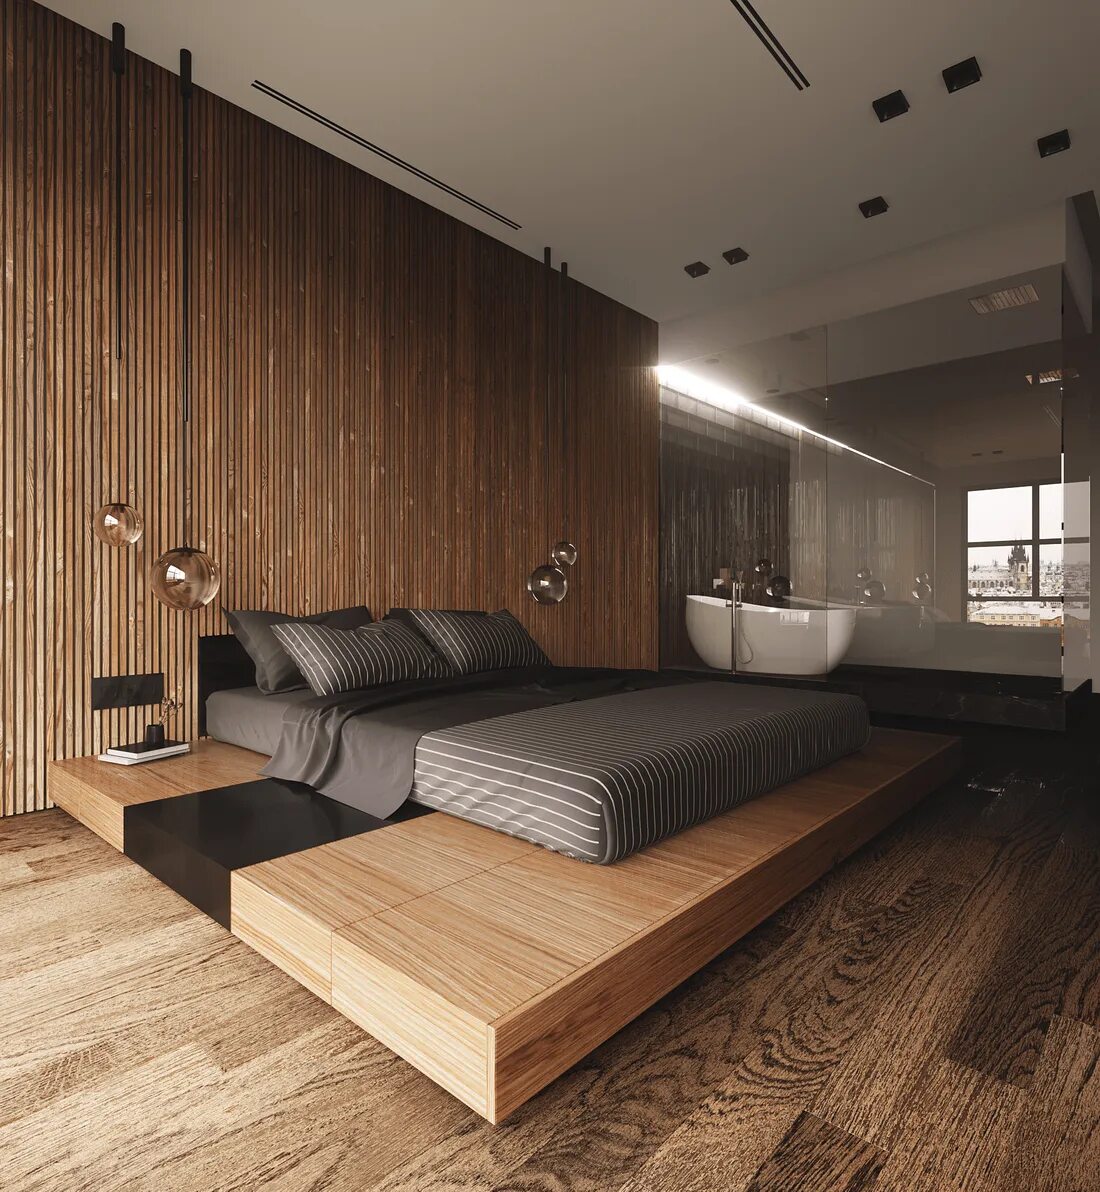 Панельная комната. Спальня в современном стиле с деревом. Спальня с деревянными рейками. Дерево в современном интерьере. Деревянные рейки в интерьере.